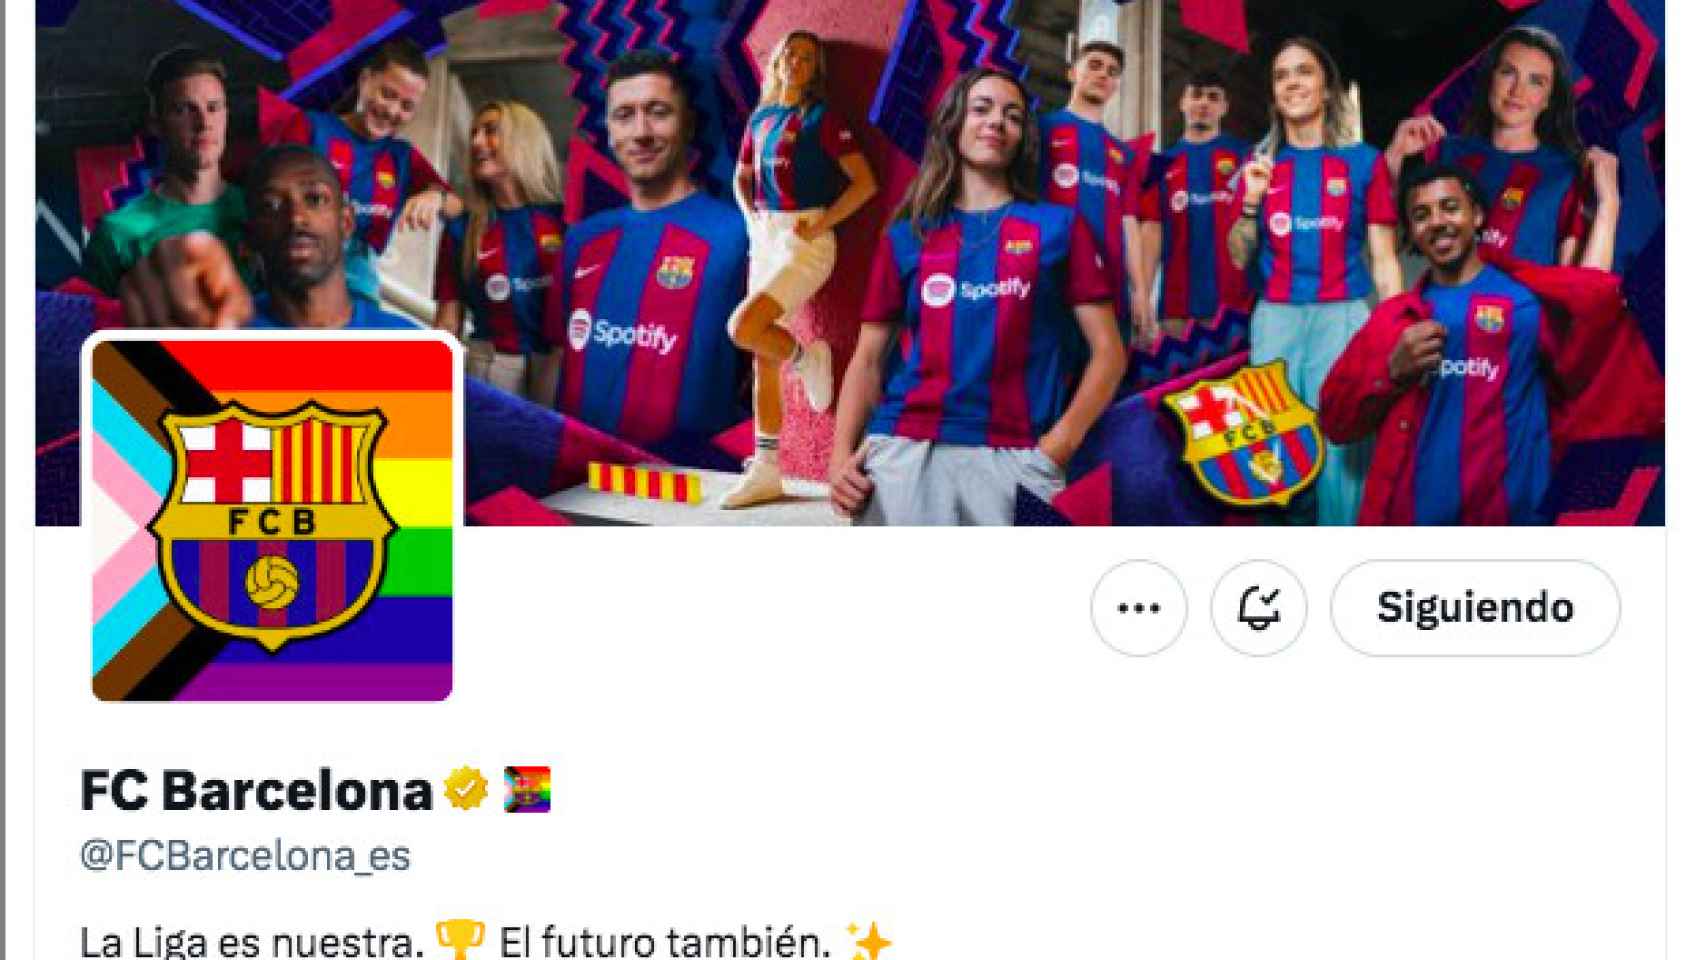 Perfil de Twitter del Barça